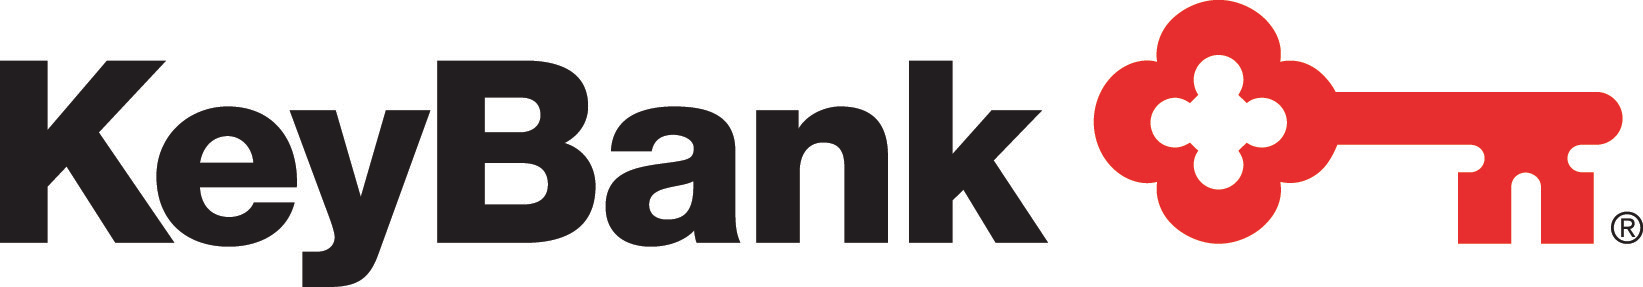 KeyBank logo CMYK